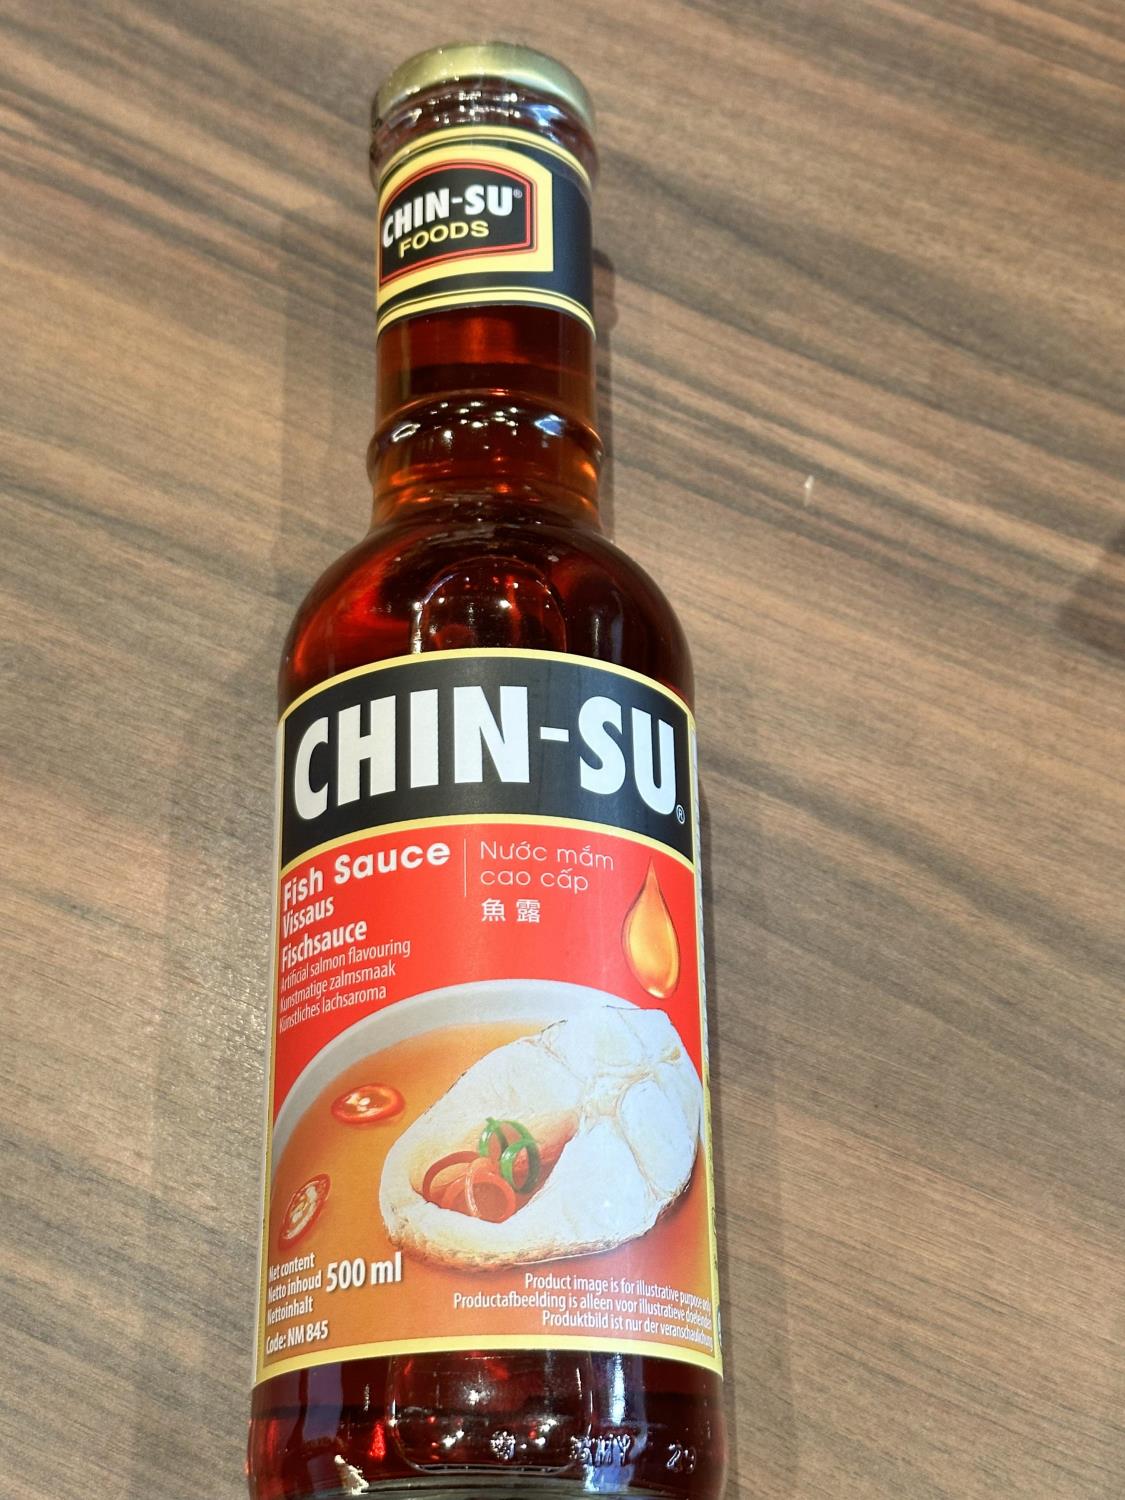 Chinsu fish sauce 500ml